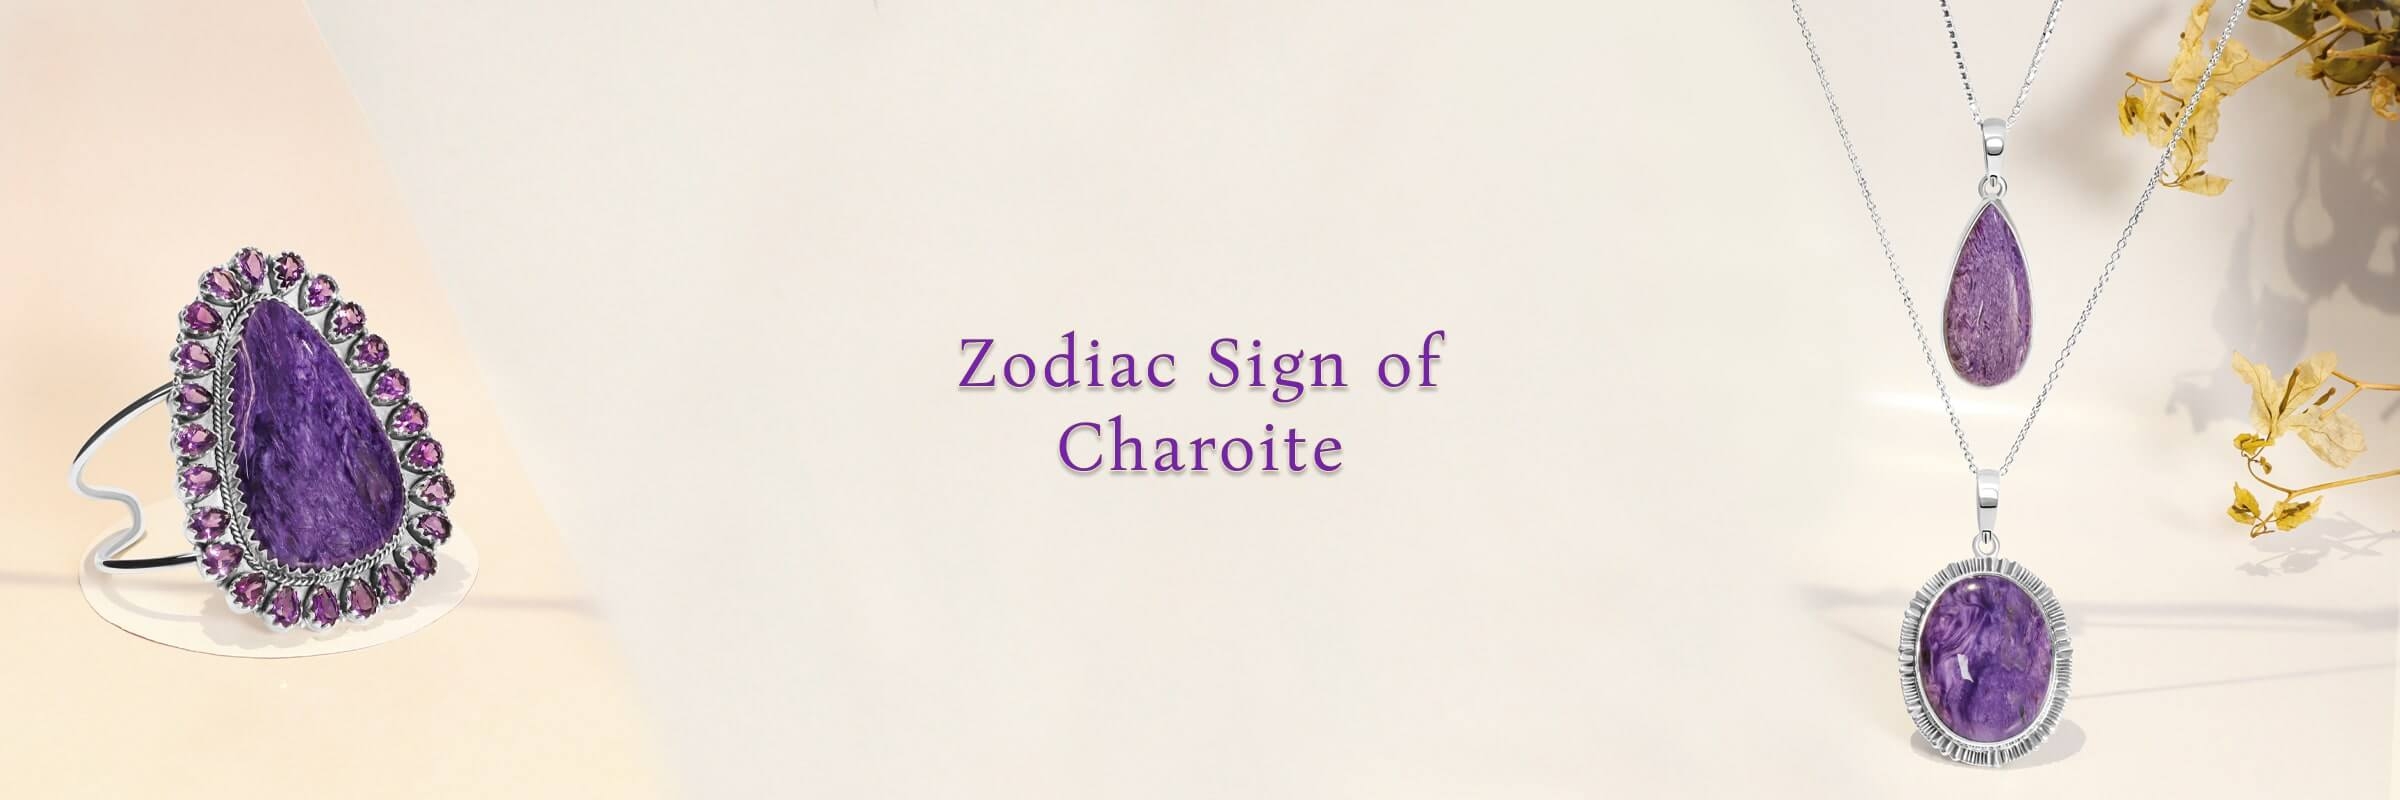 Charoite zodiac sign